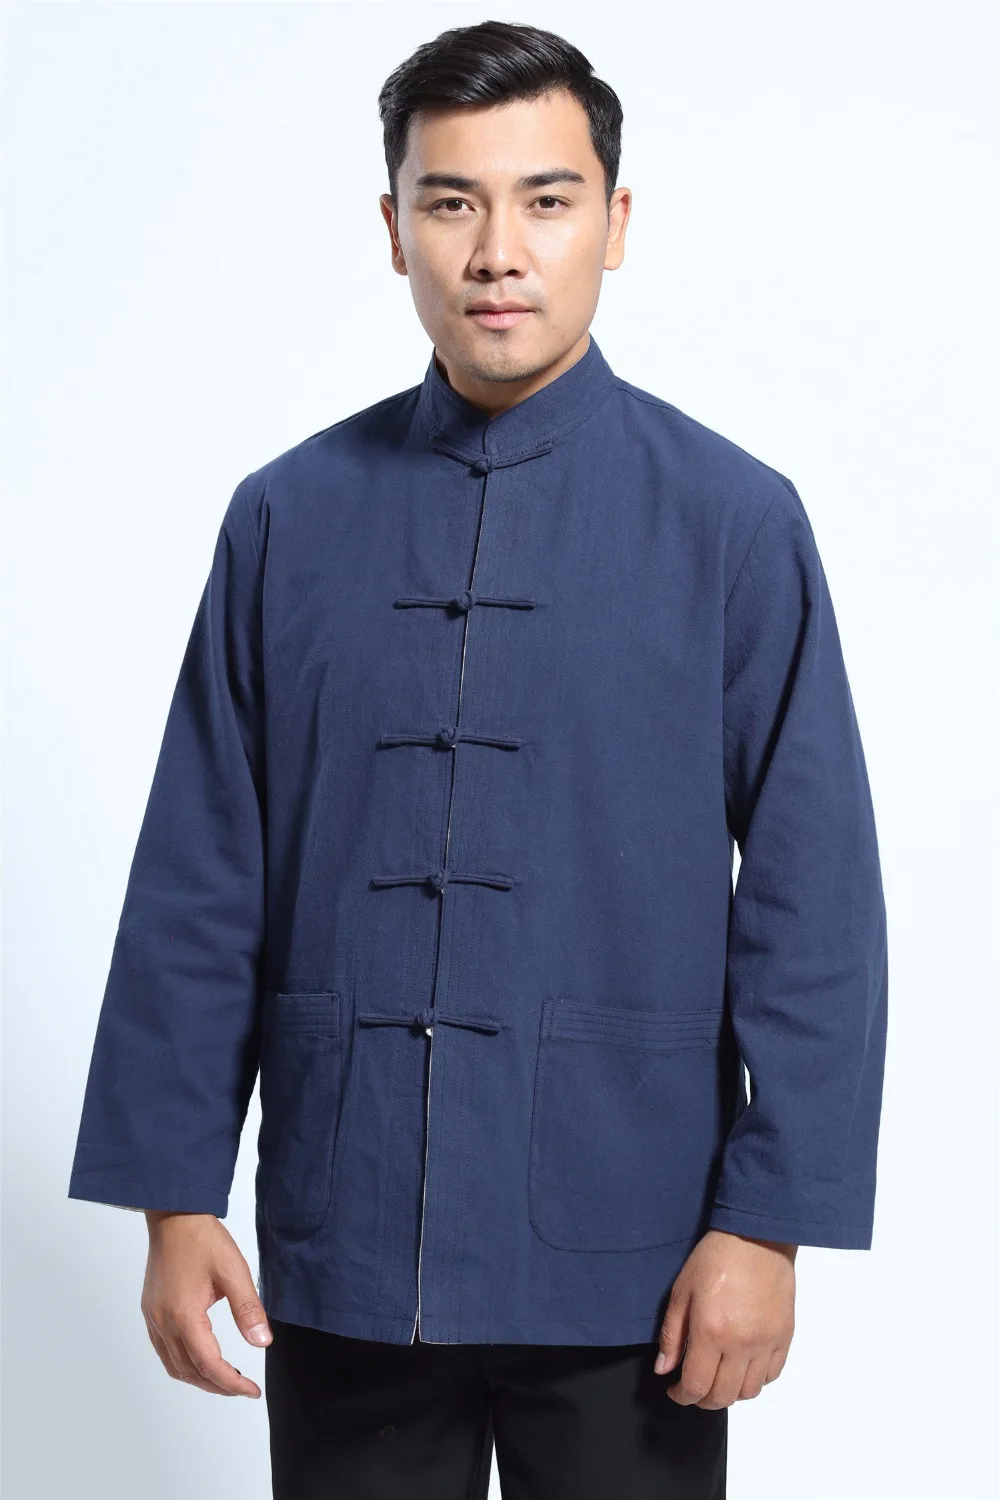 Шанхай история Китайская традиционная одежда рубашка с длинными рукавами смесь Лен Тан костюм воротник стойка Двусторонняя куртка 2 цвета